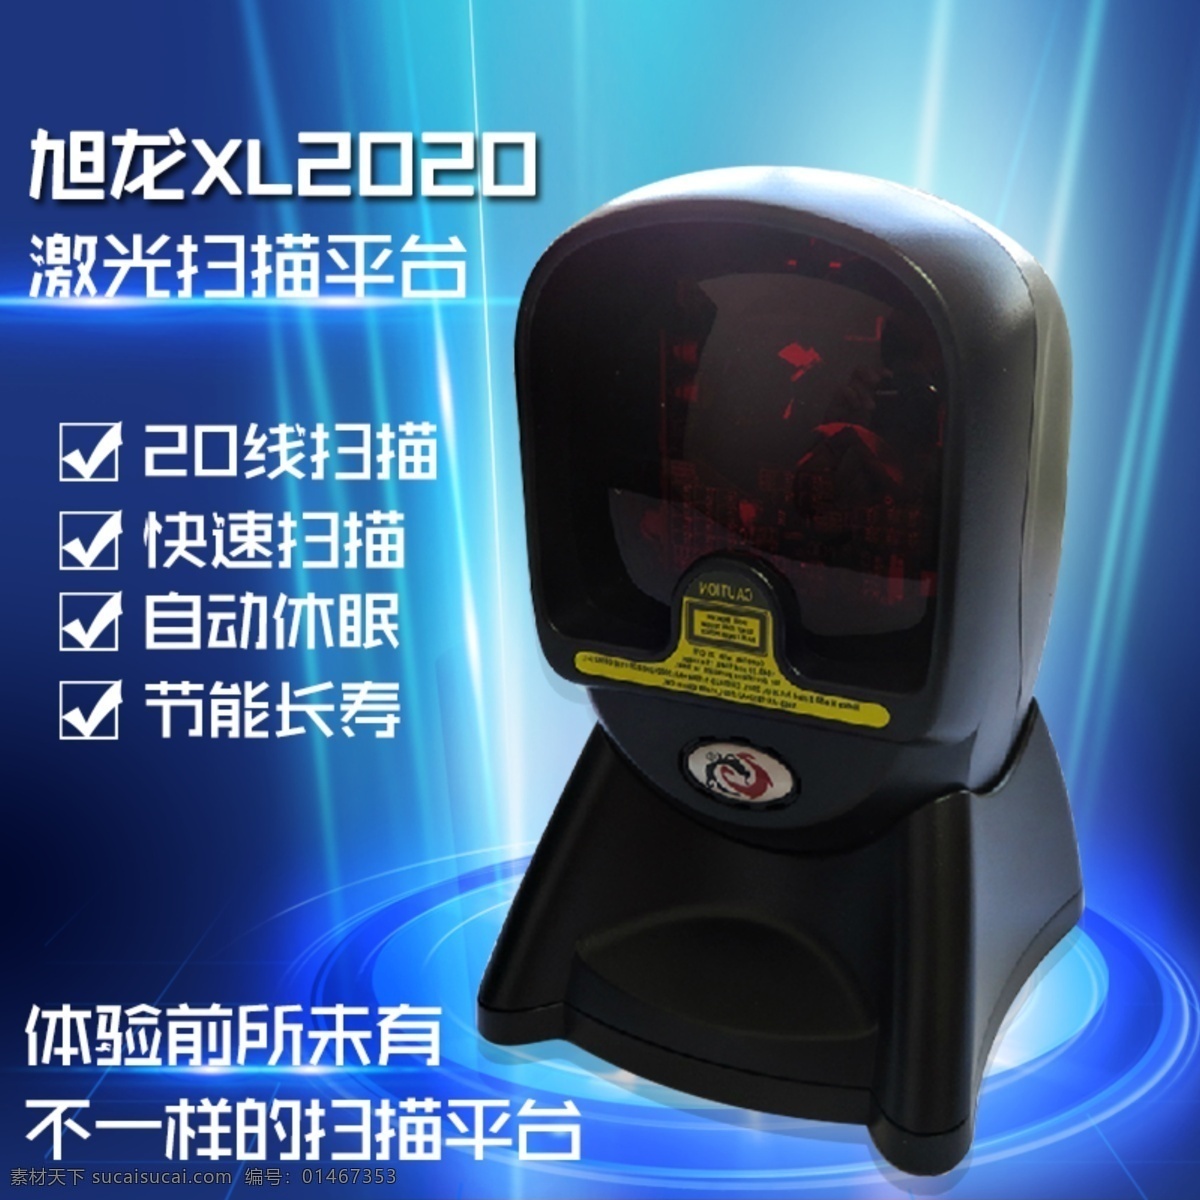 龙 xl 2020 扫描 平台 旭龙扫描器 激光扫描平台 扫描枪主图 直通车图 黑色